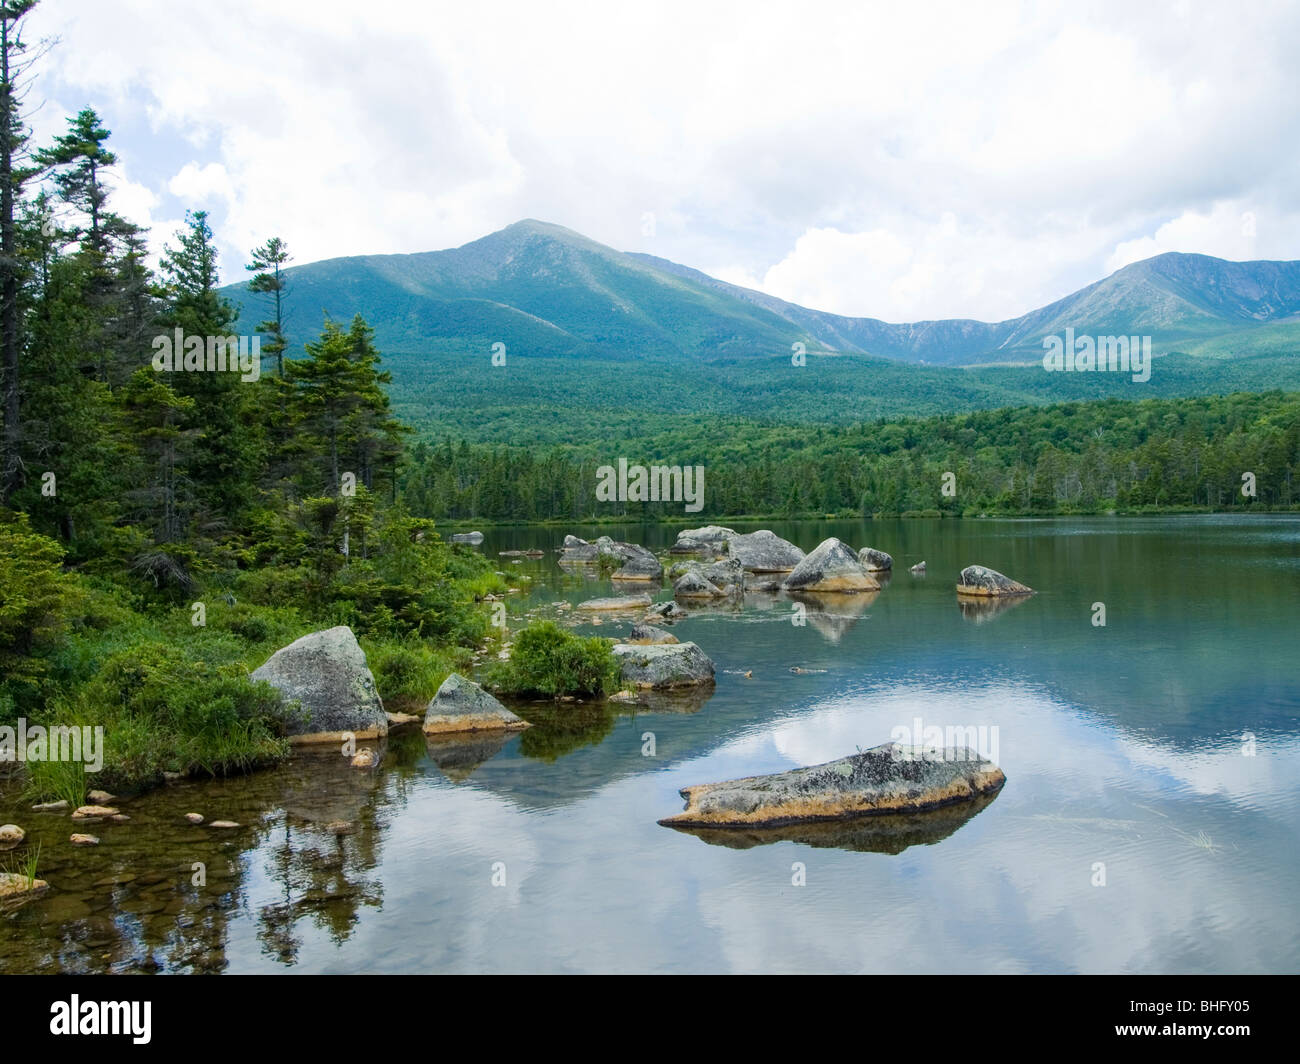 OLYMPUS Digitalkamera Ansicht des Mount Katahdin aus einem See in Baxter State Park, Maine Stockfoto